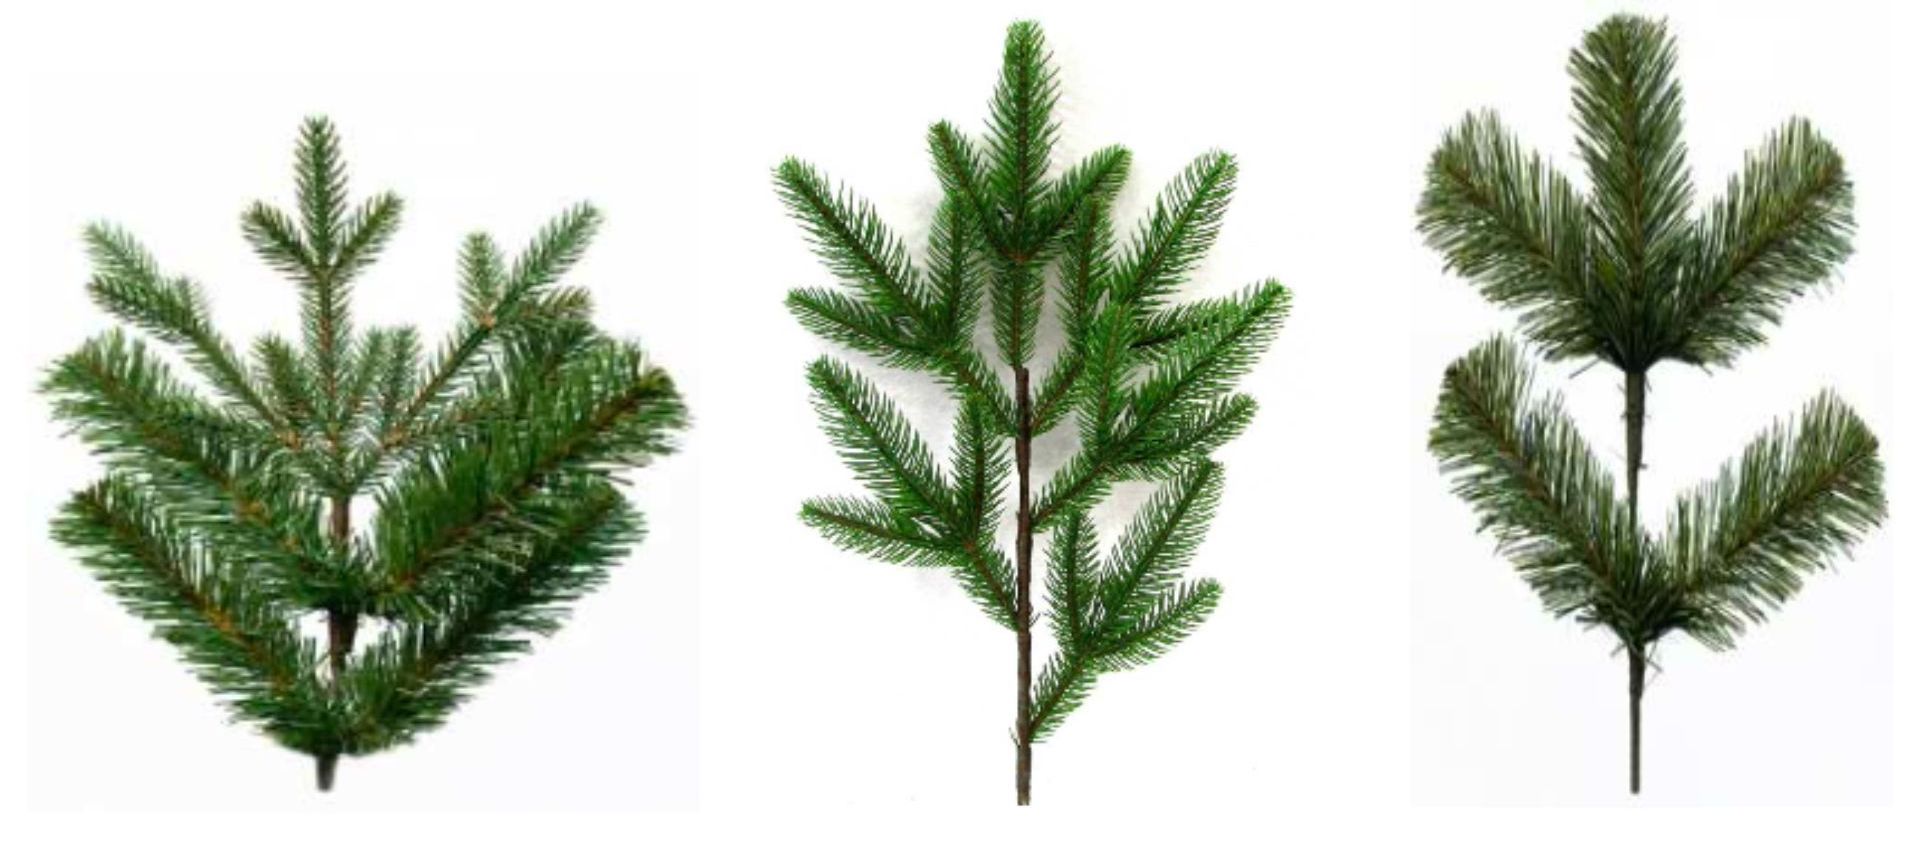 Jaký je rozdíl mezi tradičními, 3D a FULL 3D umělými stromky?